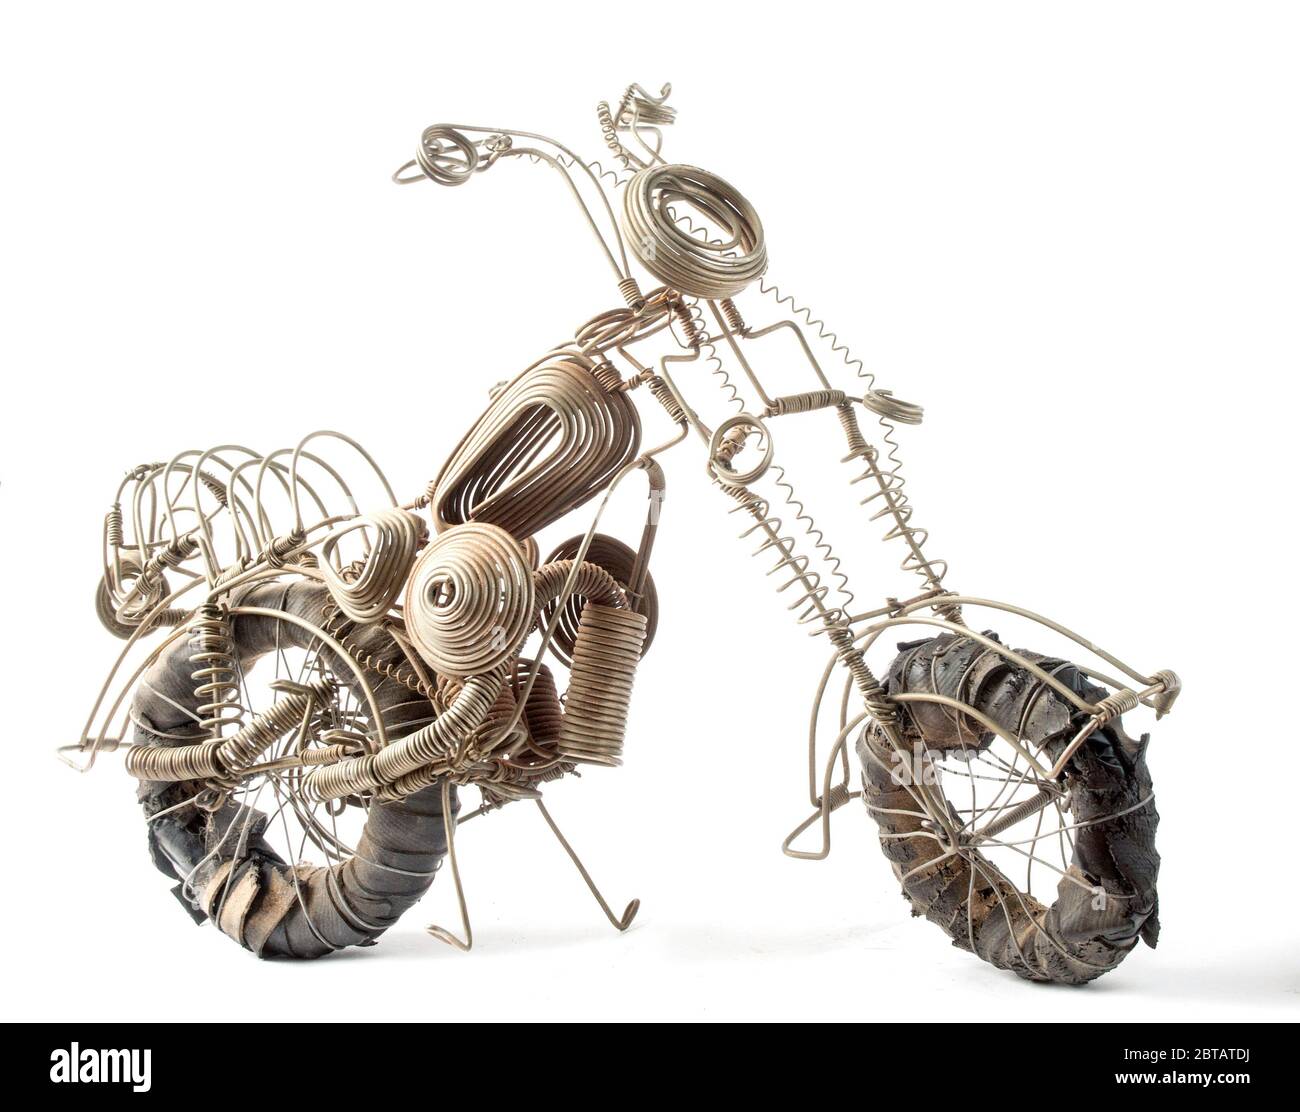 Photo d'un modèle en fil métallique réalisé à la main et détaillé d'une moto réalisée par un jeune Malawian près du lac Malawi. Toutes les pièces sont faites à partir de différents morceaux de fil Banque D'Images